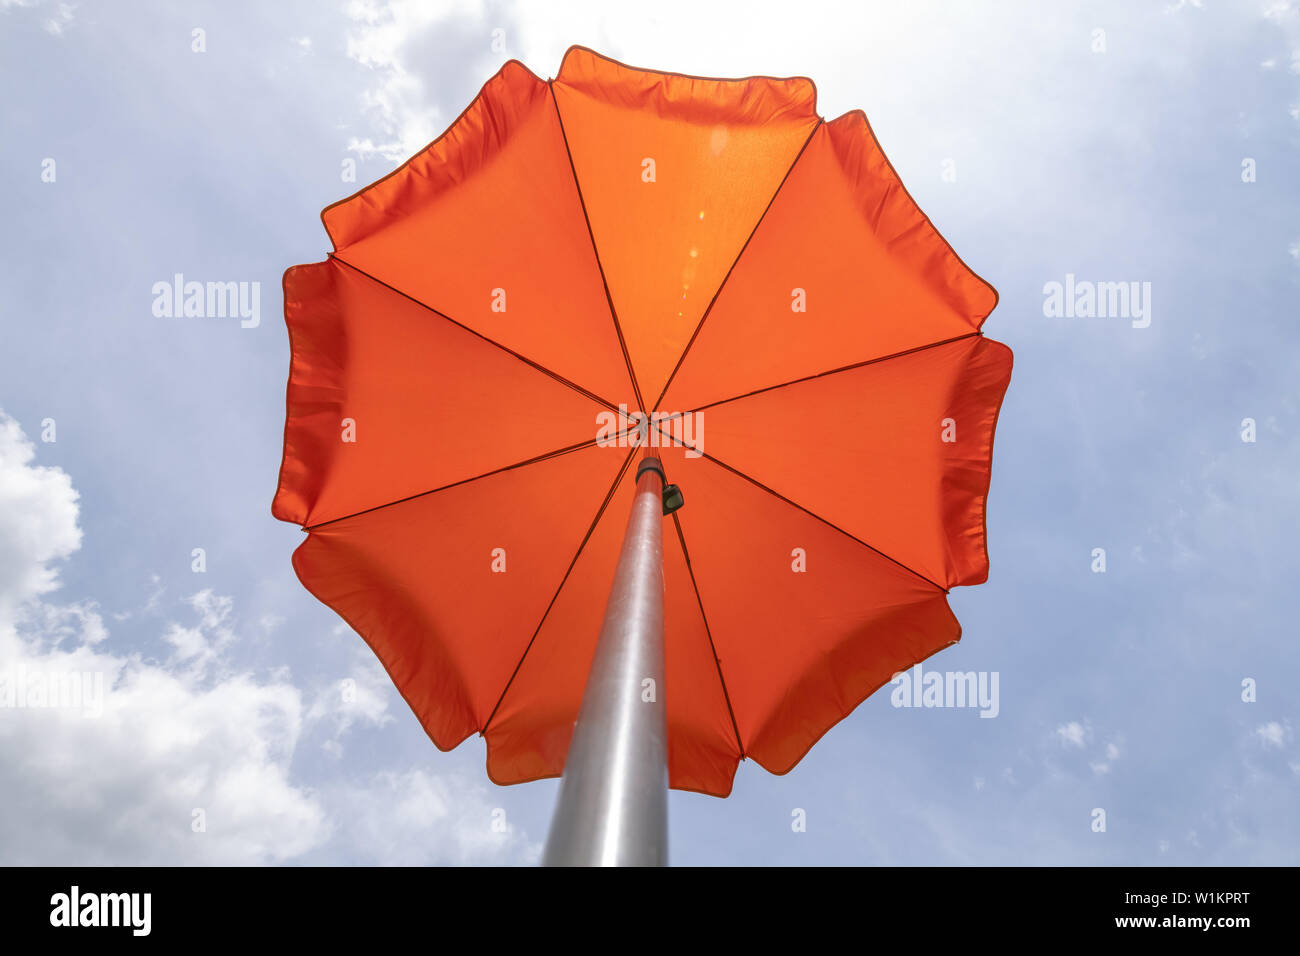 Foto de una sombrilla en el cielo azul,playa sombrilla.un vibrante color naranja sombrilla contra un intenso azul cielo y nube blanca. Foto de stock